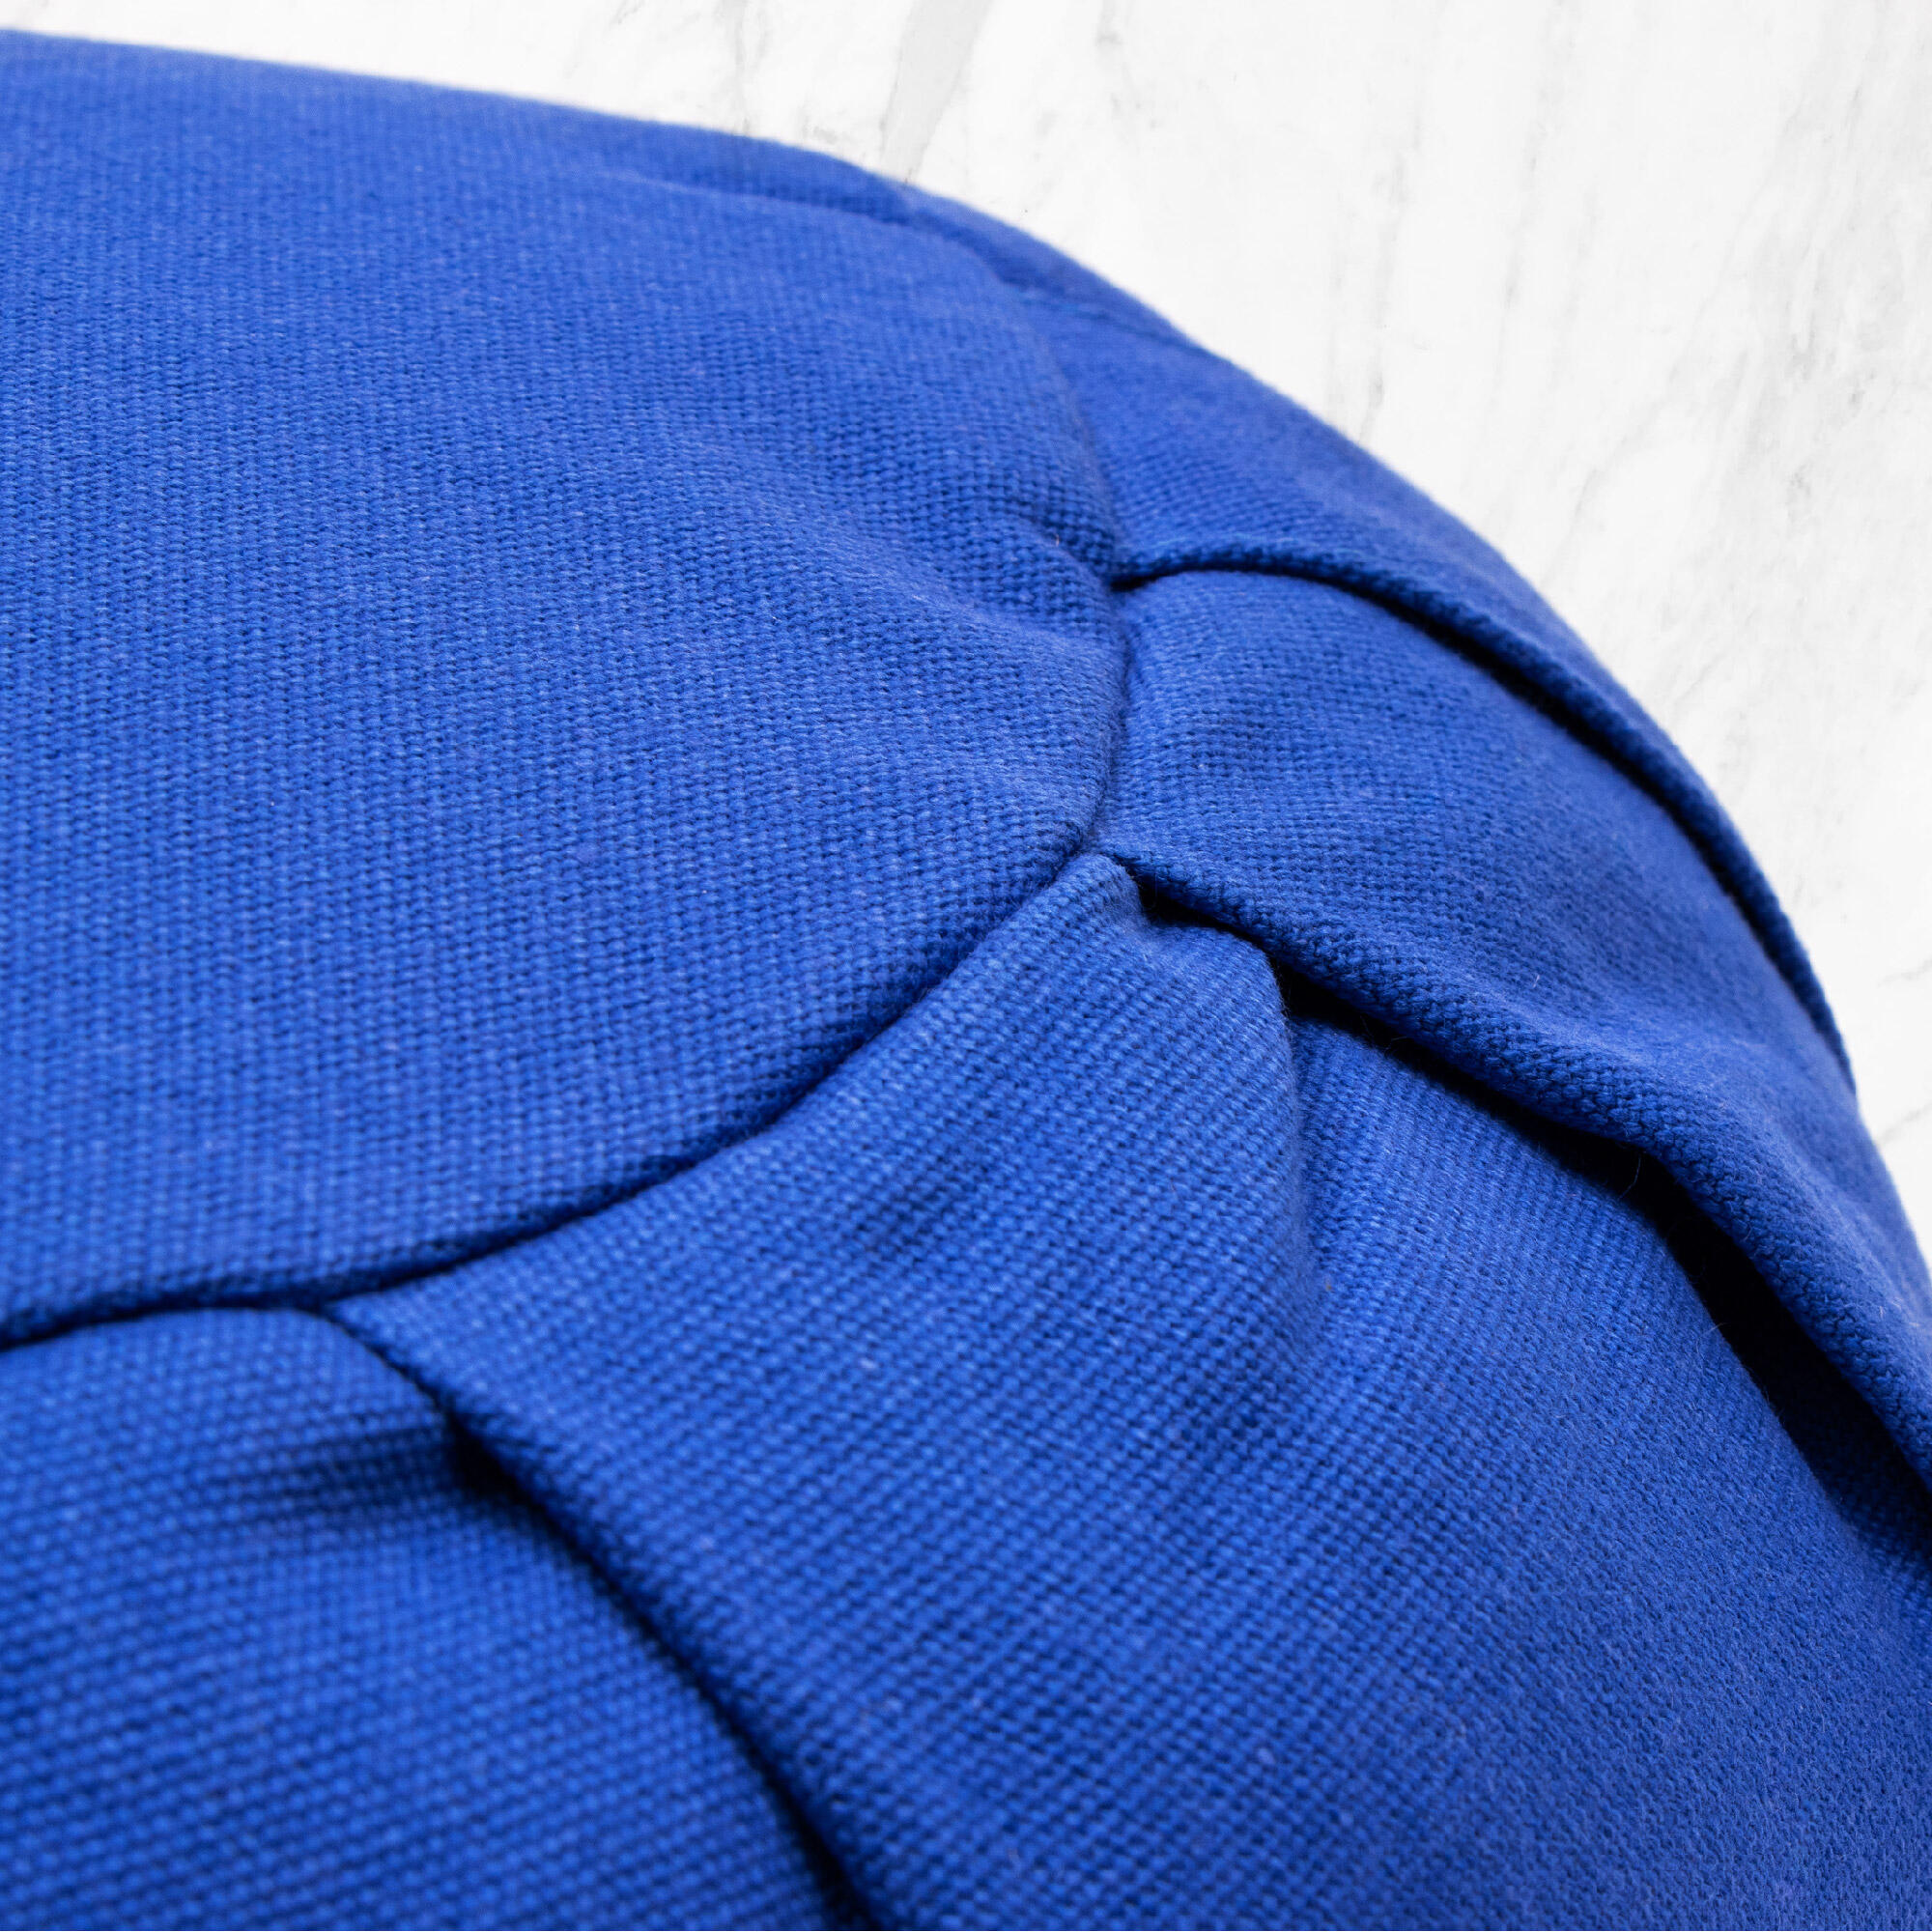 Myga Zafu Meditation Cushion - Blue 5/8